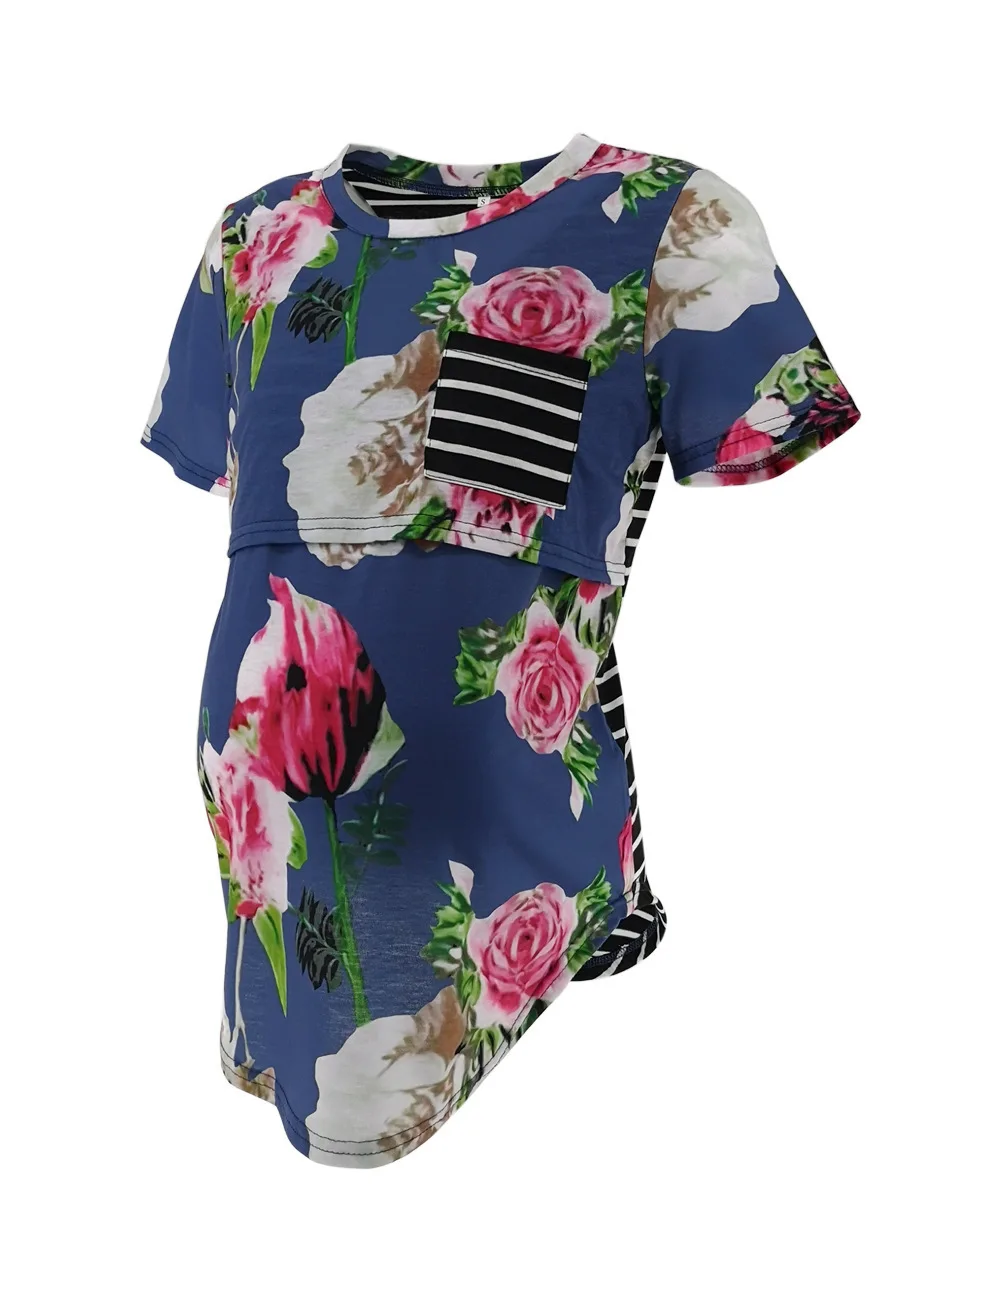 ENXI 2019 Одежда для беременных с цветочным принтом, футболка с короткими рукавами, летняя рубашка для беременных, топы для беременных